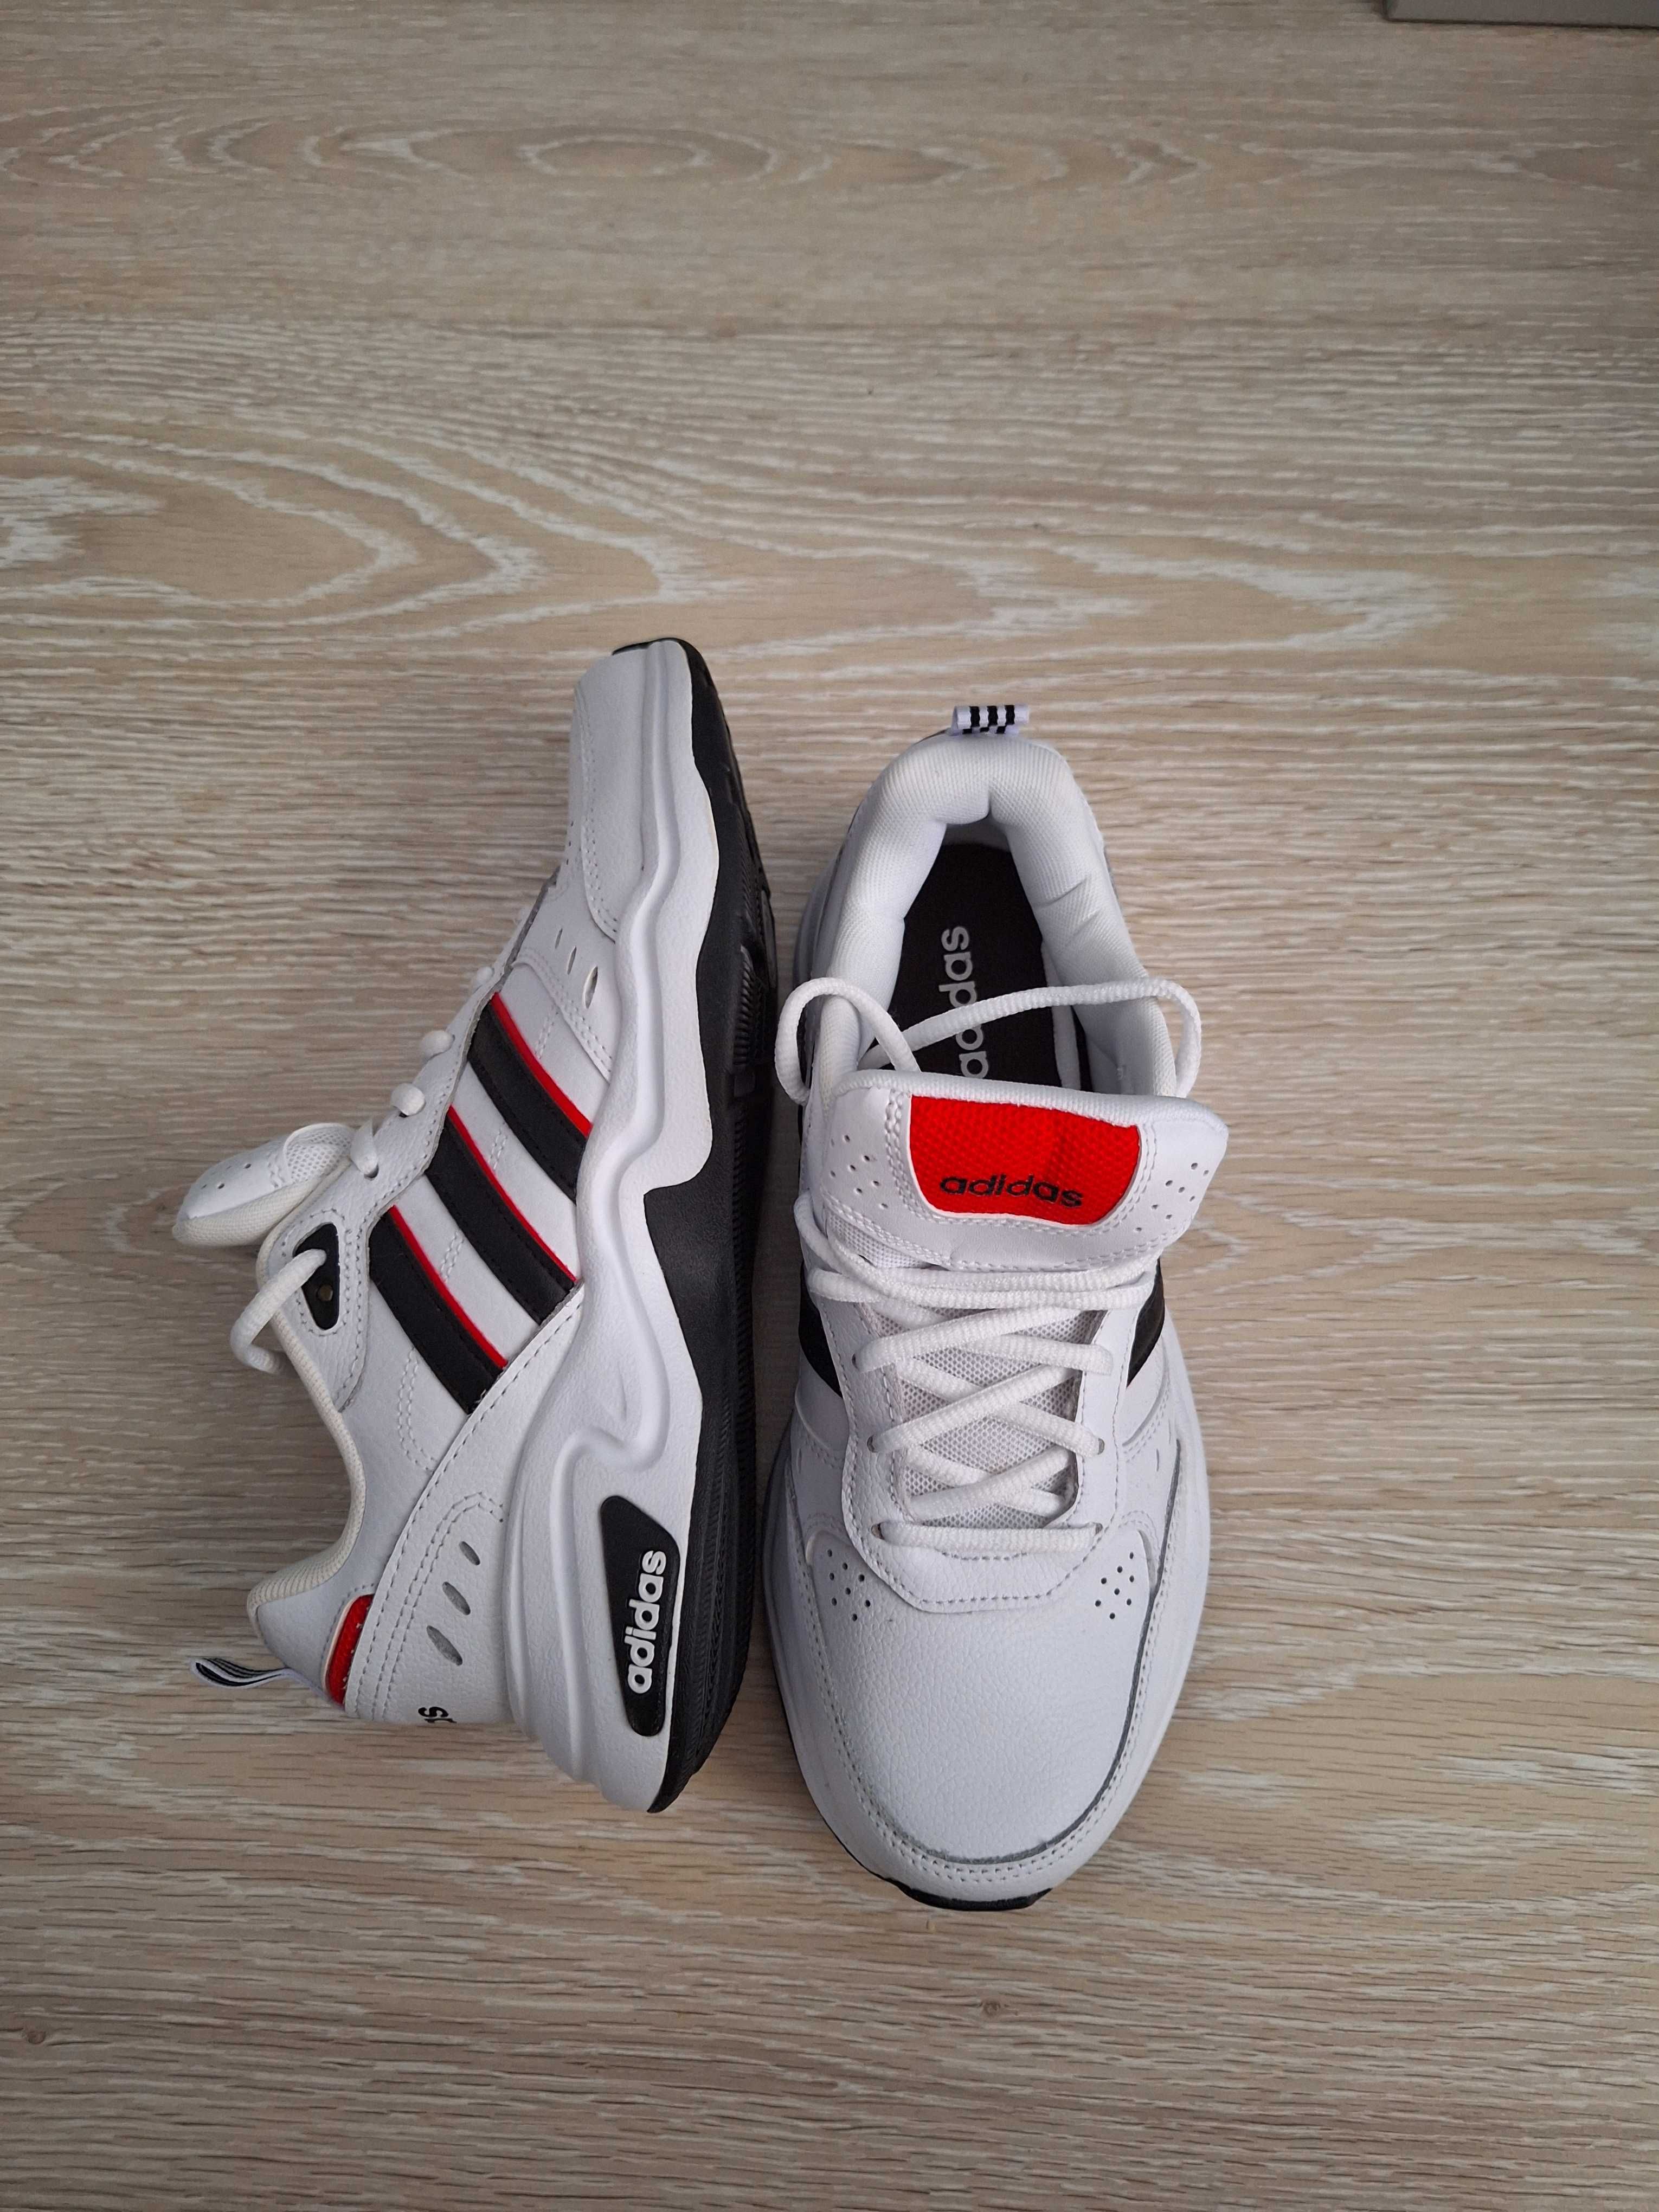 Adidas strutter:бяло и червено